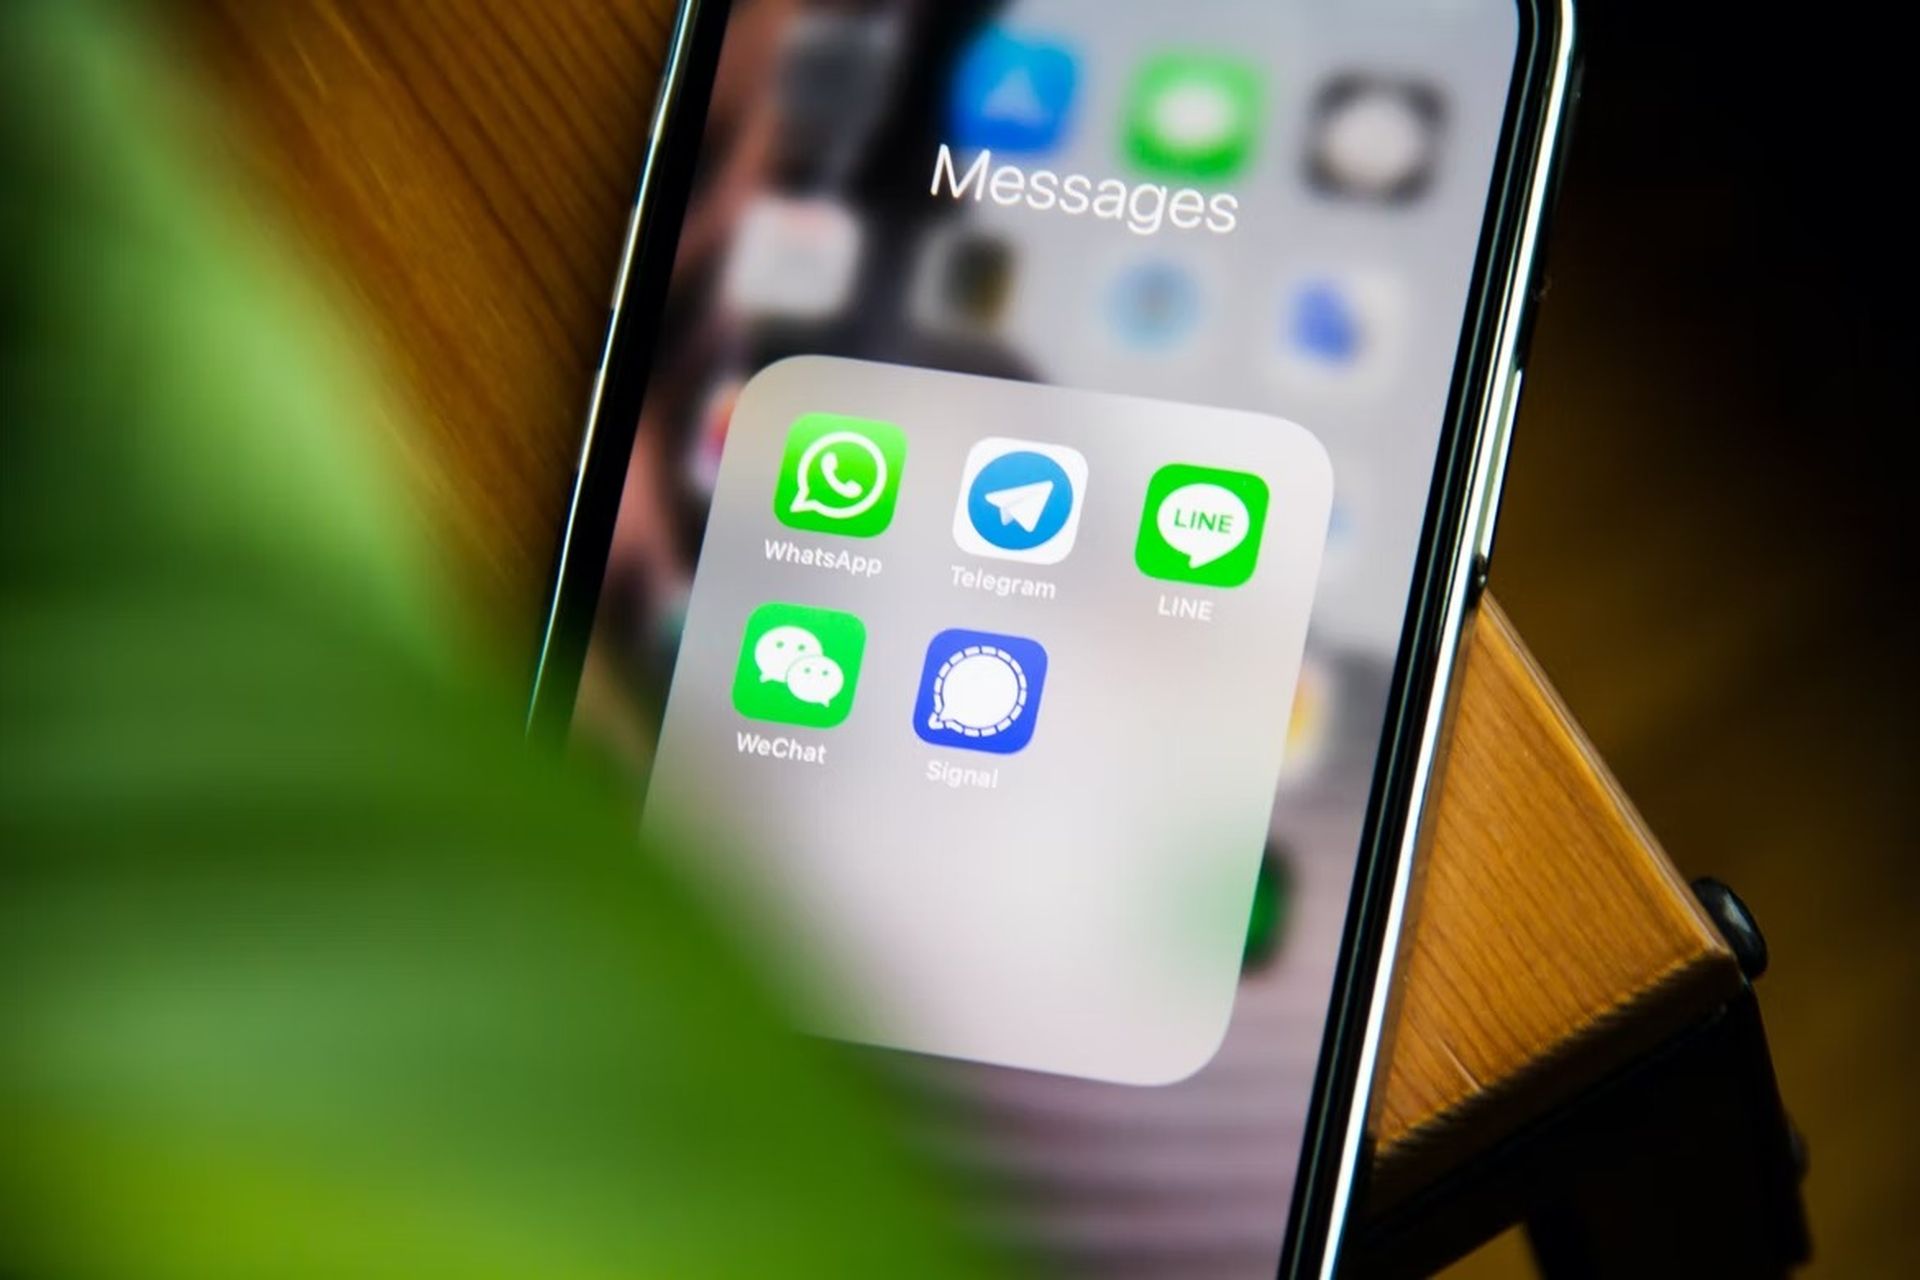 WhatsApp wird die Unterstützung für iOS 10 und iOS 11 bis Ende 2022 einstellen. Eine neue Warnung, die von WABetaInfo entdeckt wurde, ermutigt iPhone-Benutzer, ihre Software zu aktualisieren, um WhatsApp nach dem 24. Oktober weiterhin verwenden zu können.